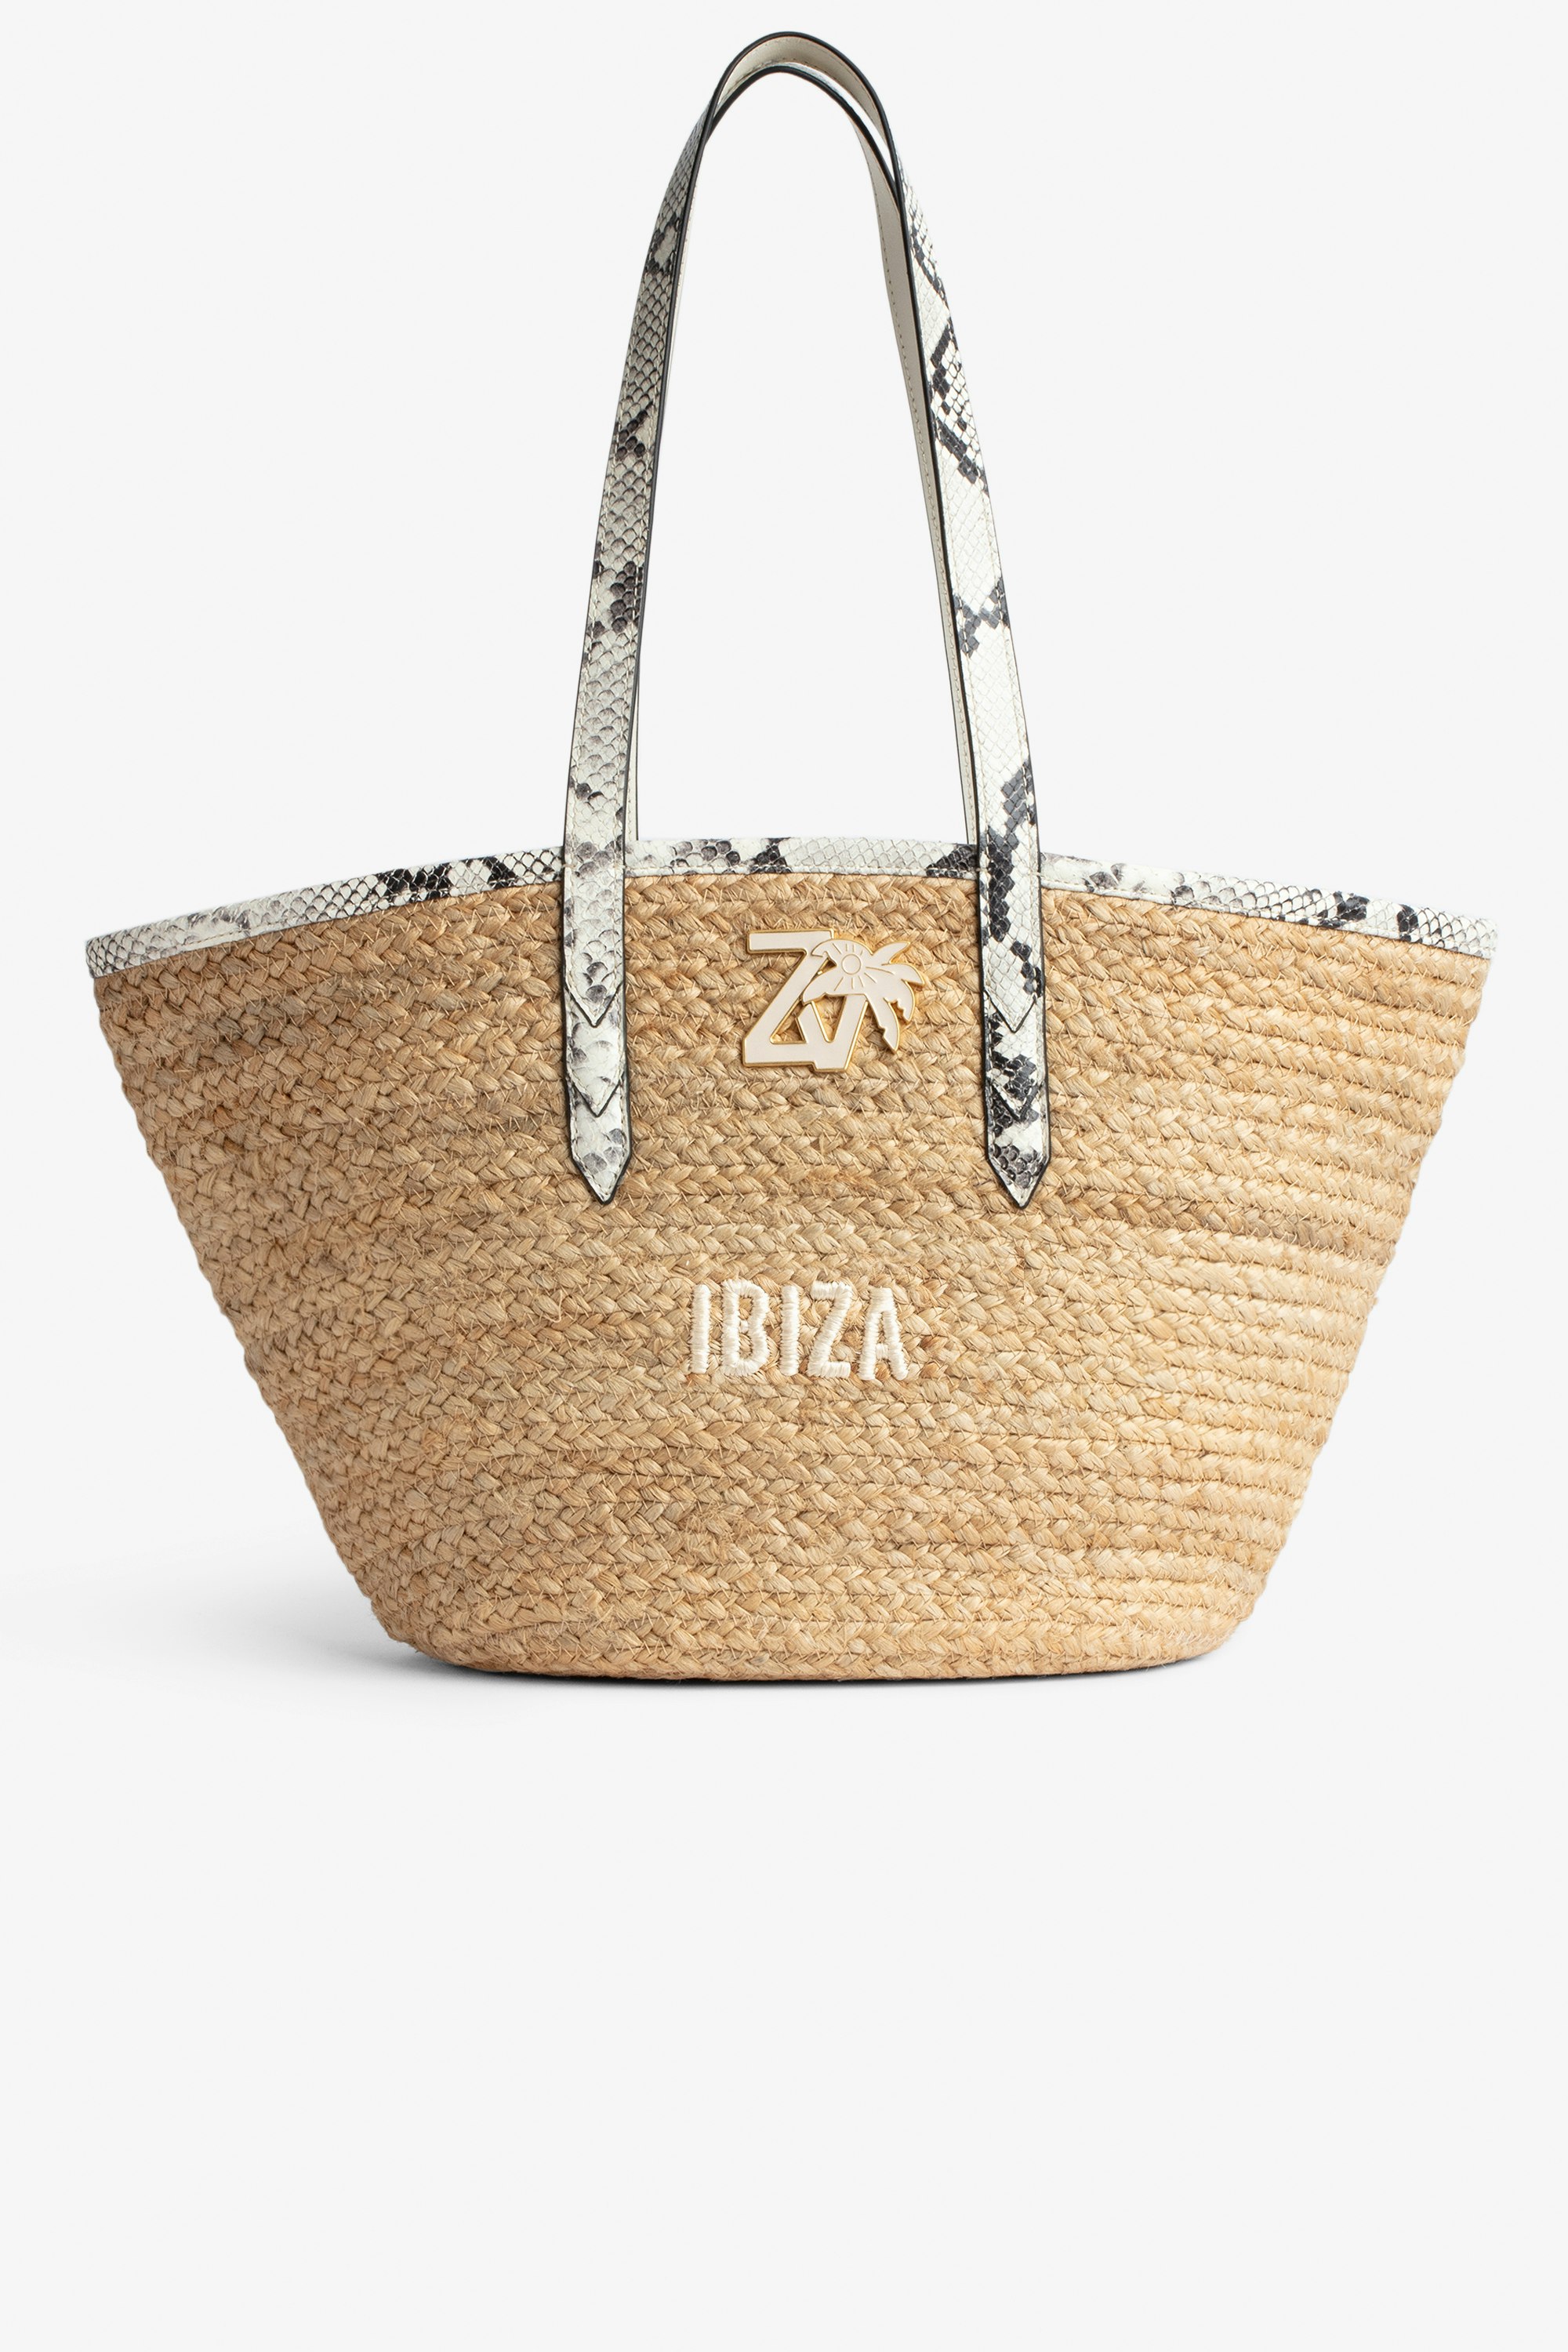 Sac Le Beach Bag Sac en paille à anses en cuir écru effet python, brodé "Ibiza" et orné d'un charm ZV Femme